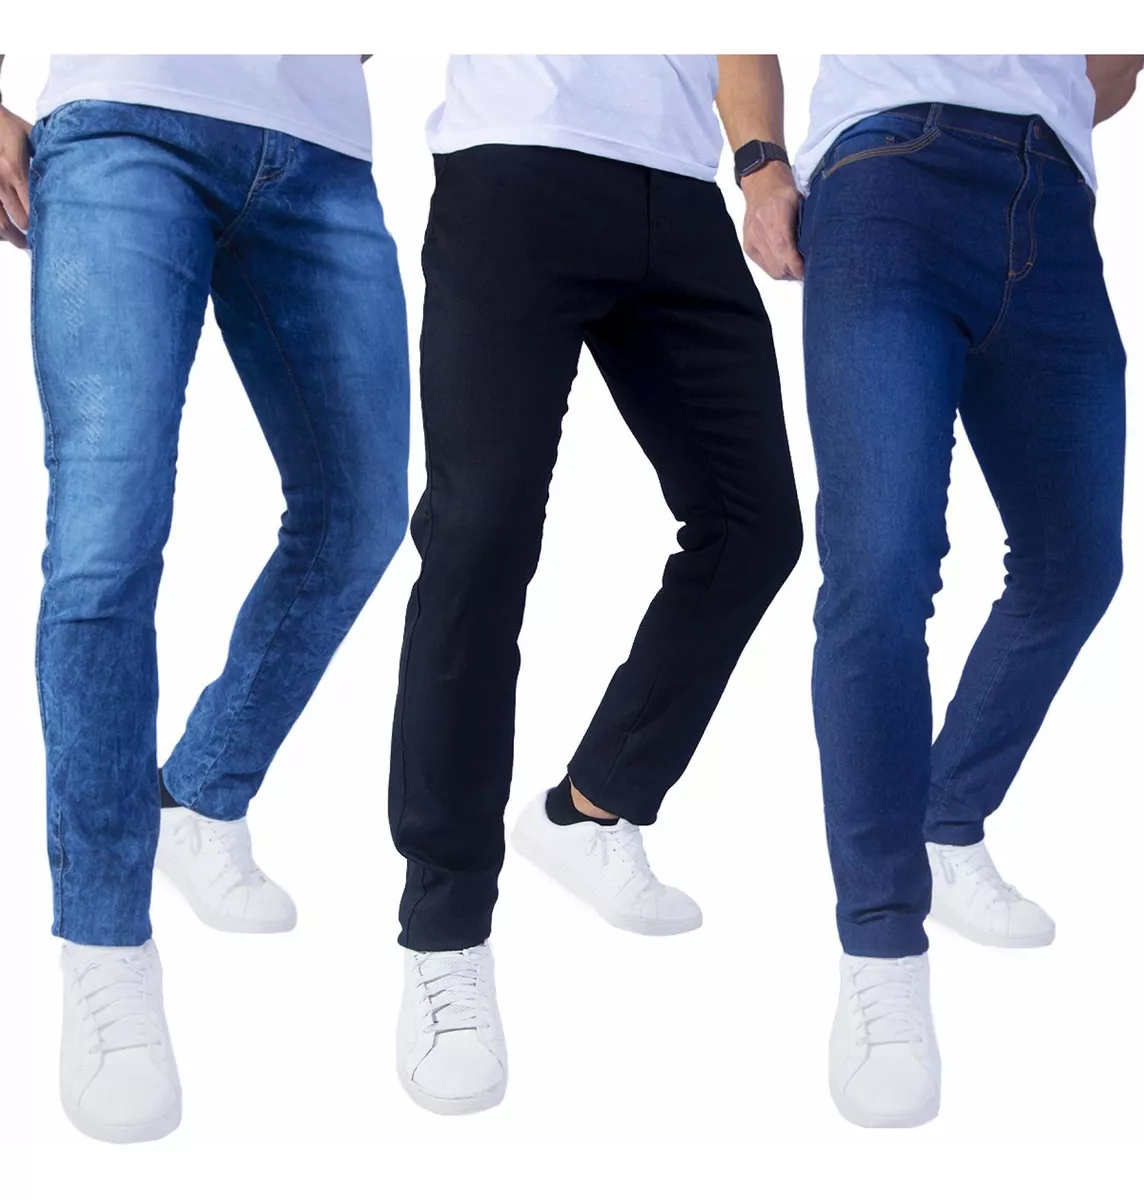 Kit 3 Calça Jeans Masculina Original Slim